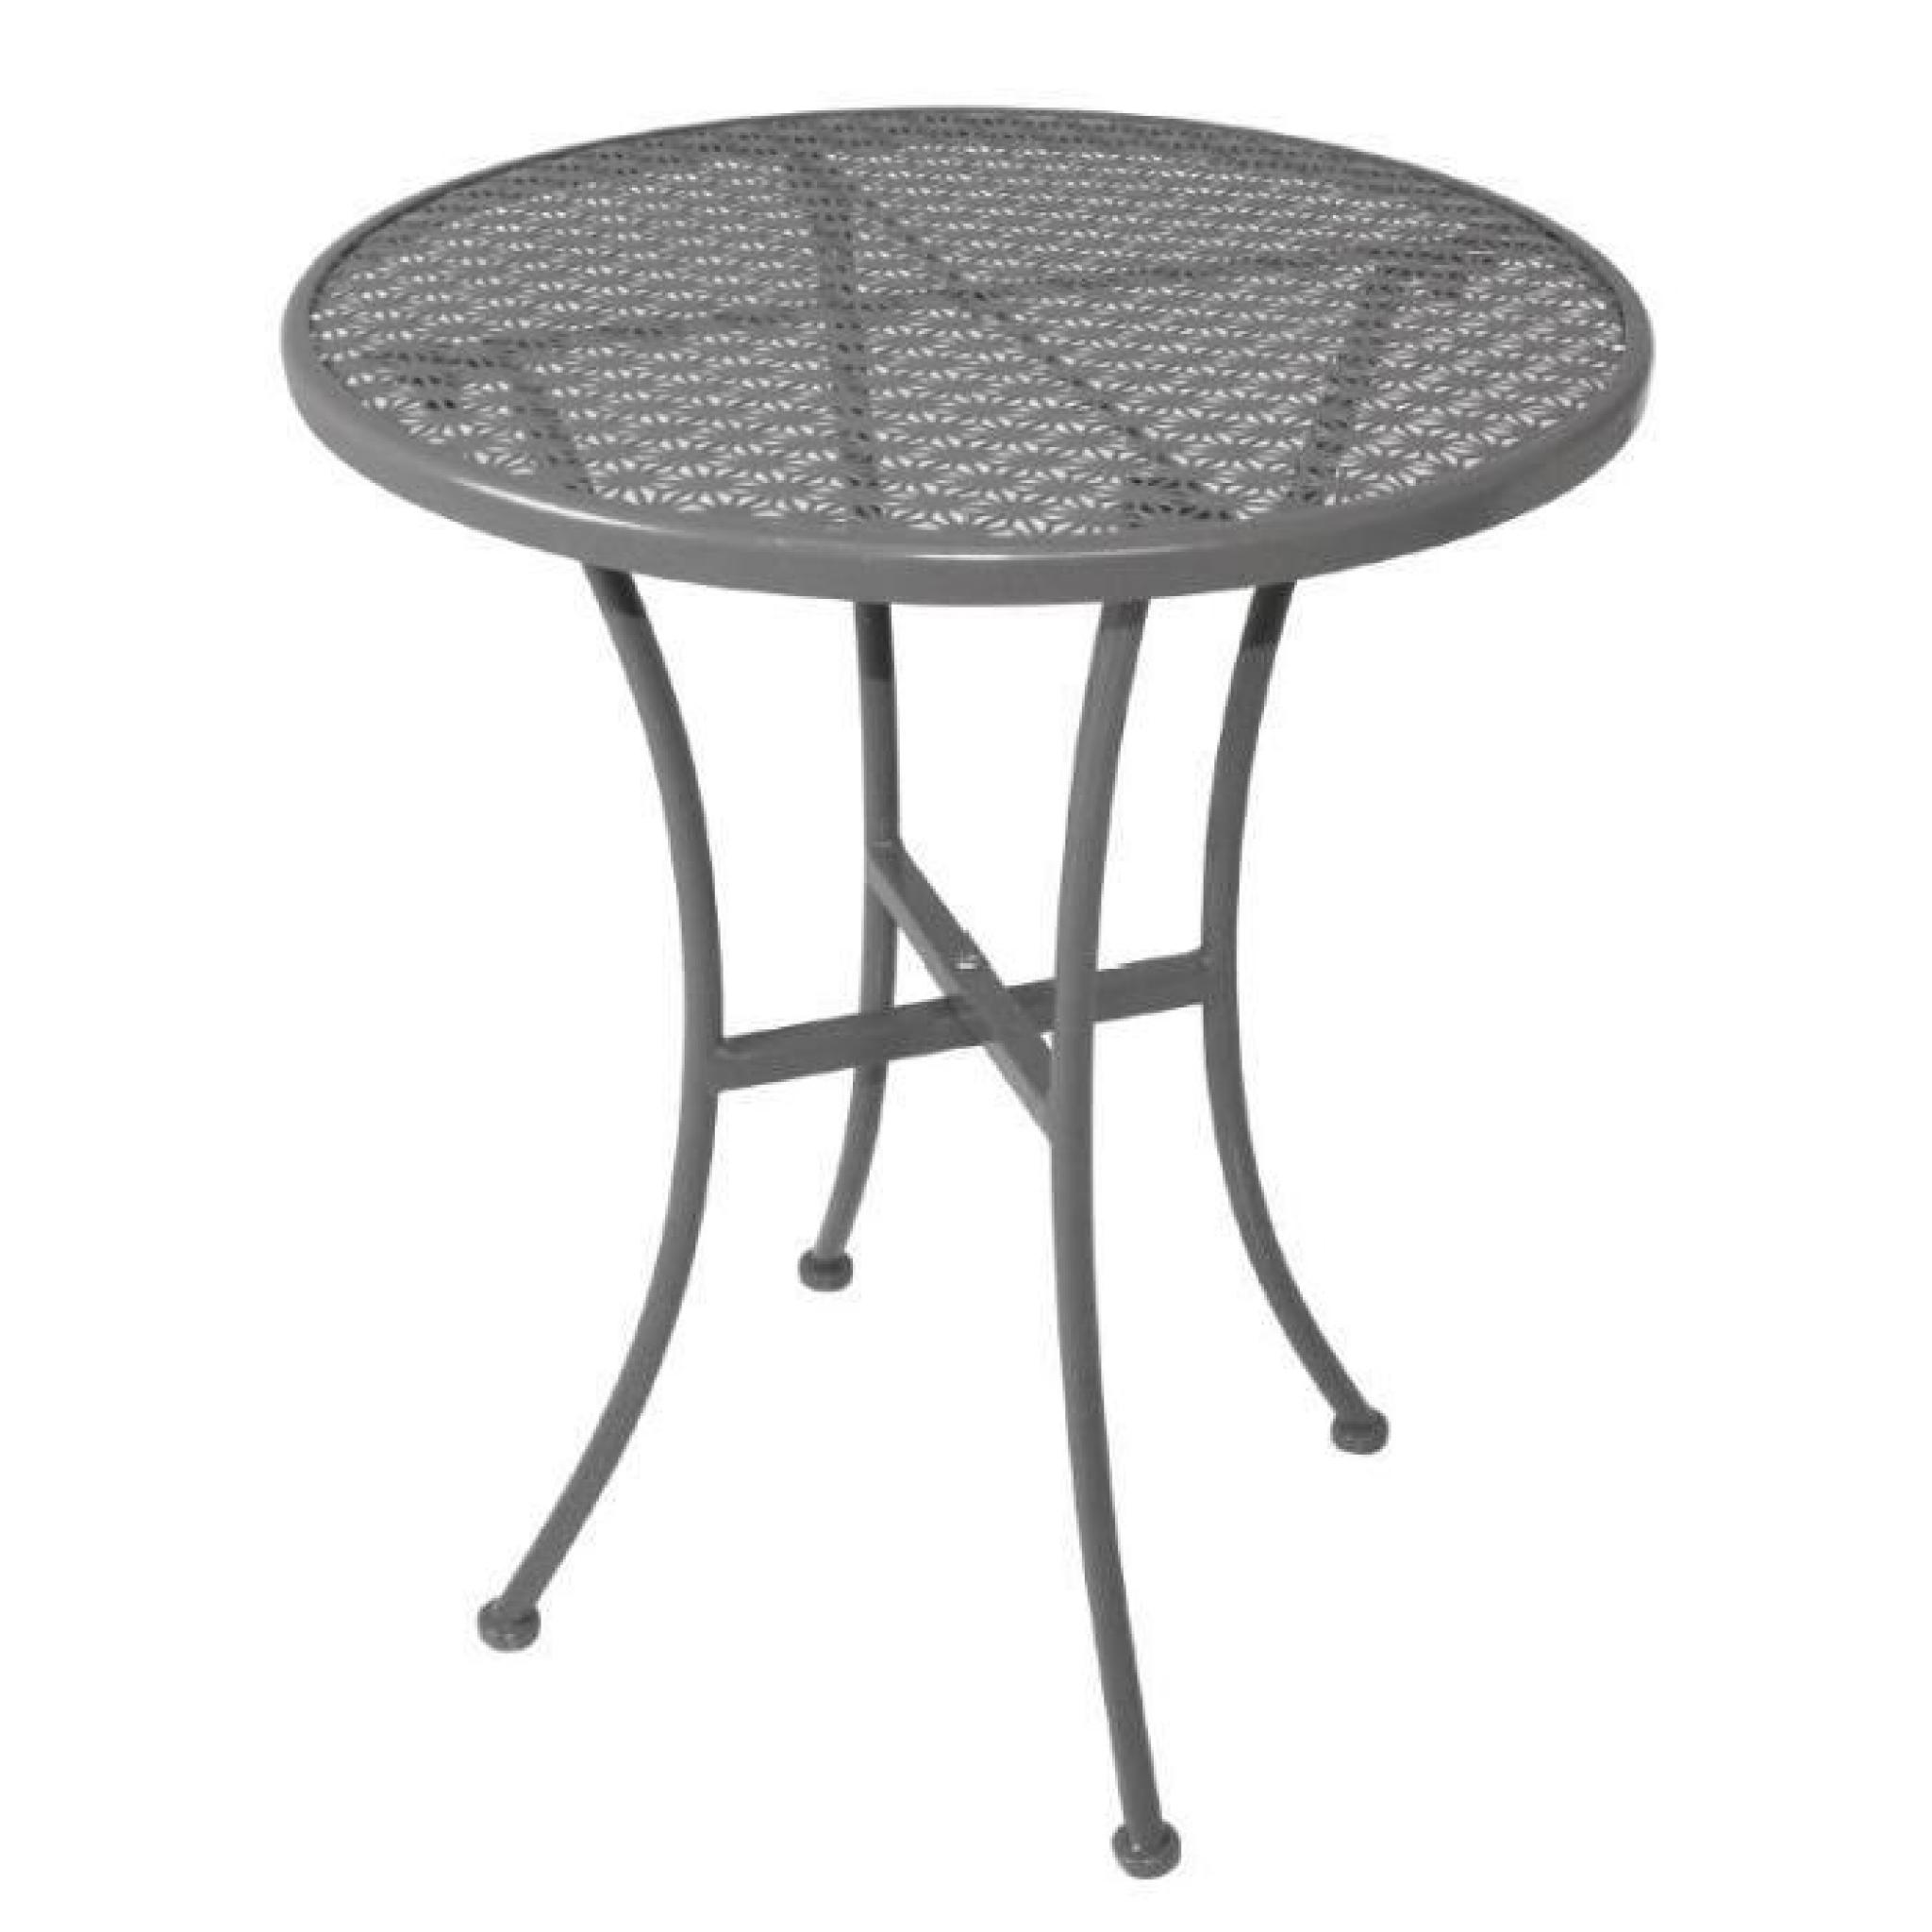 Table moderne en acier de forme ronde coloris gris